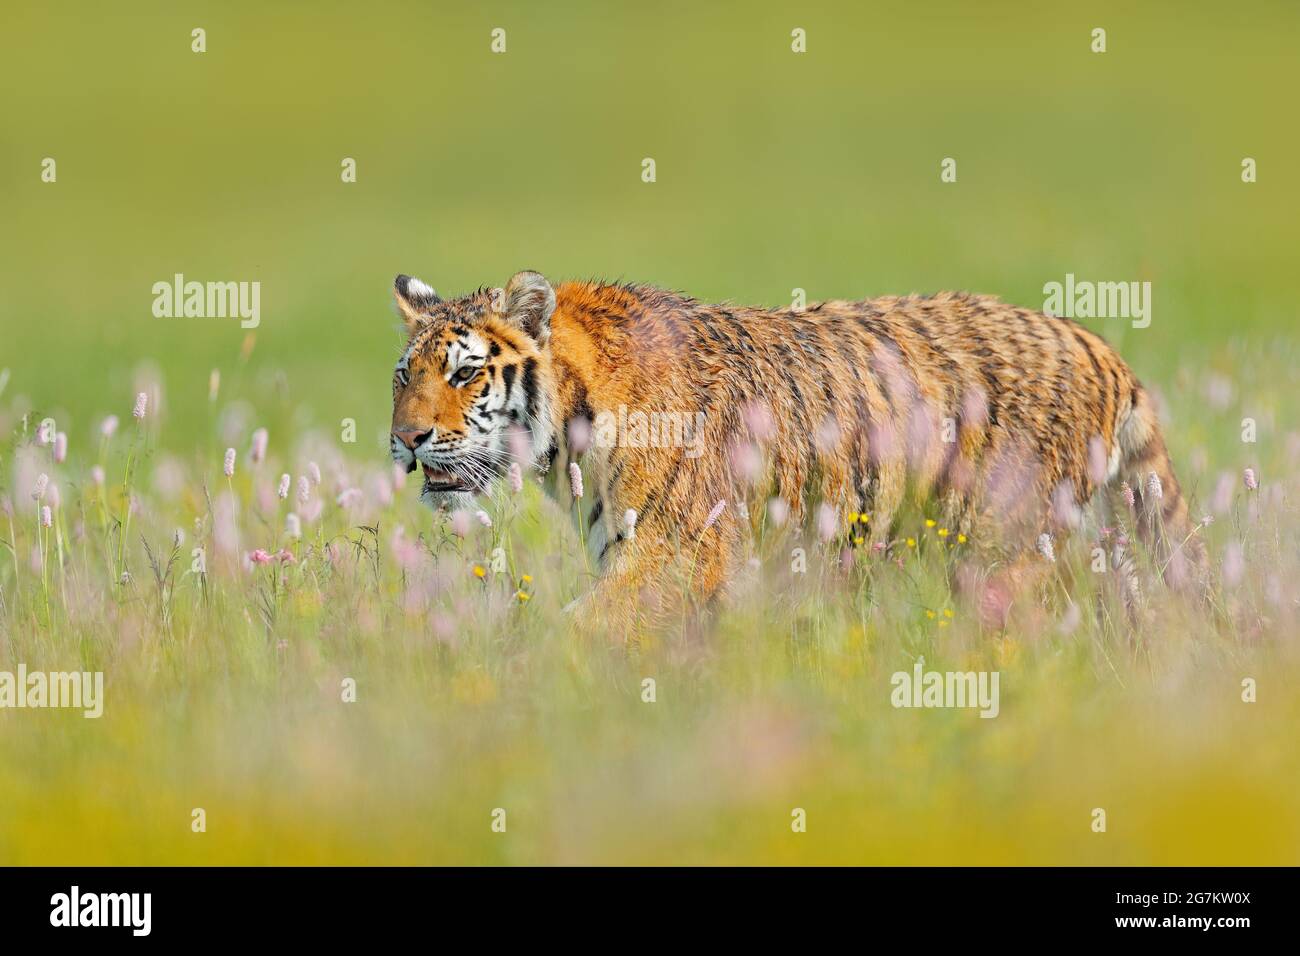 Tiger mit rosa und gelben Blüten. Amurtiger sitzt im Gras. Blühende Wiese mit gefährlichen Tieren. Wildtiere aus dem Sommer Russland. Stockfoto